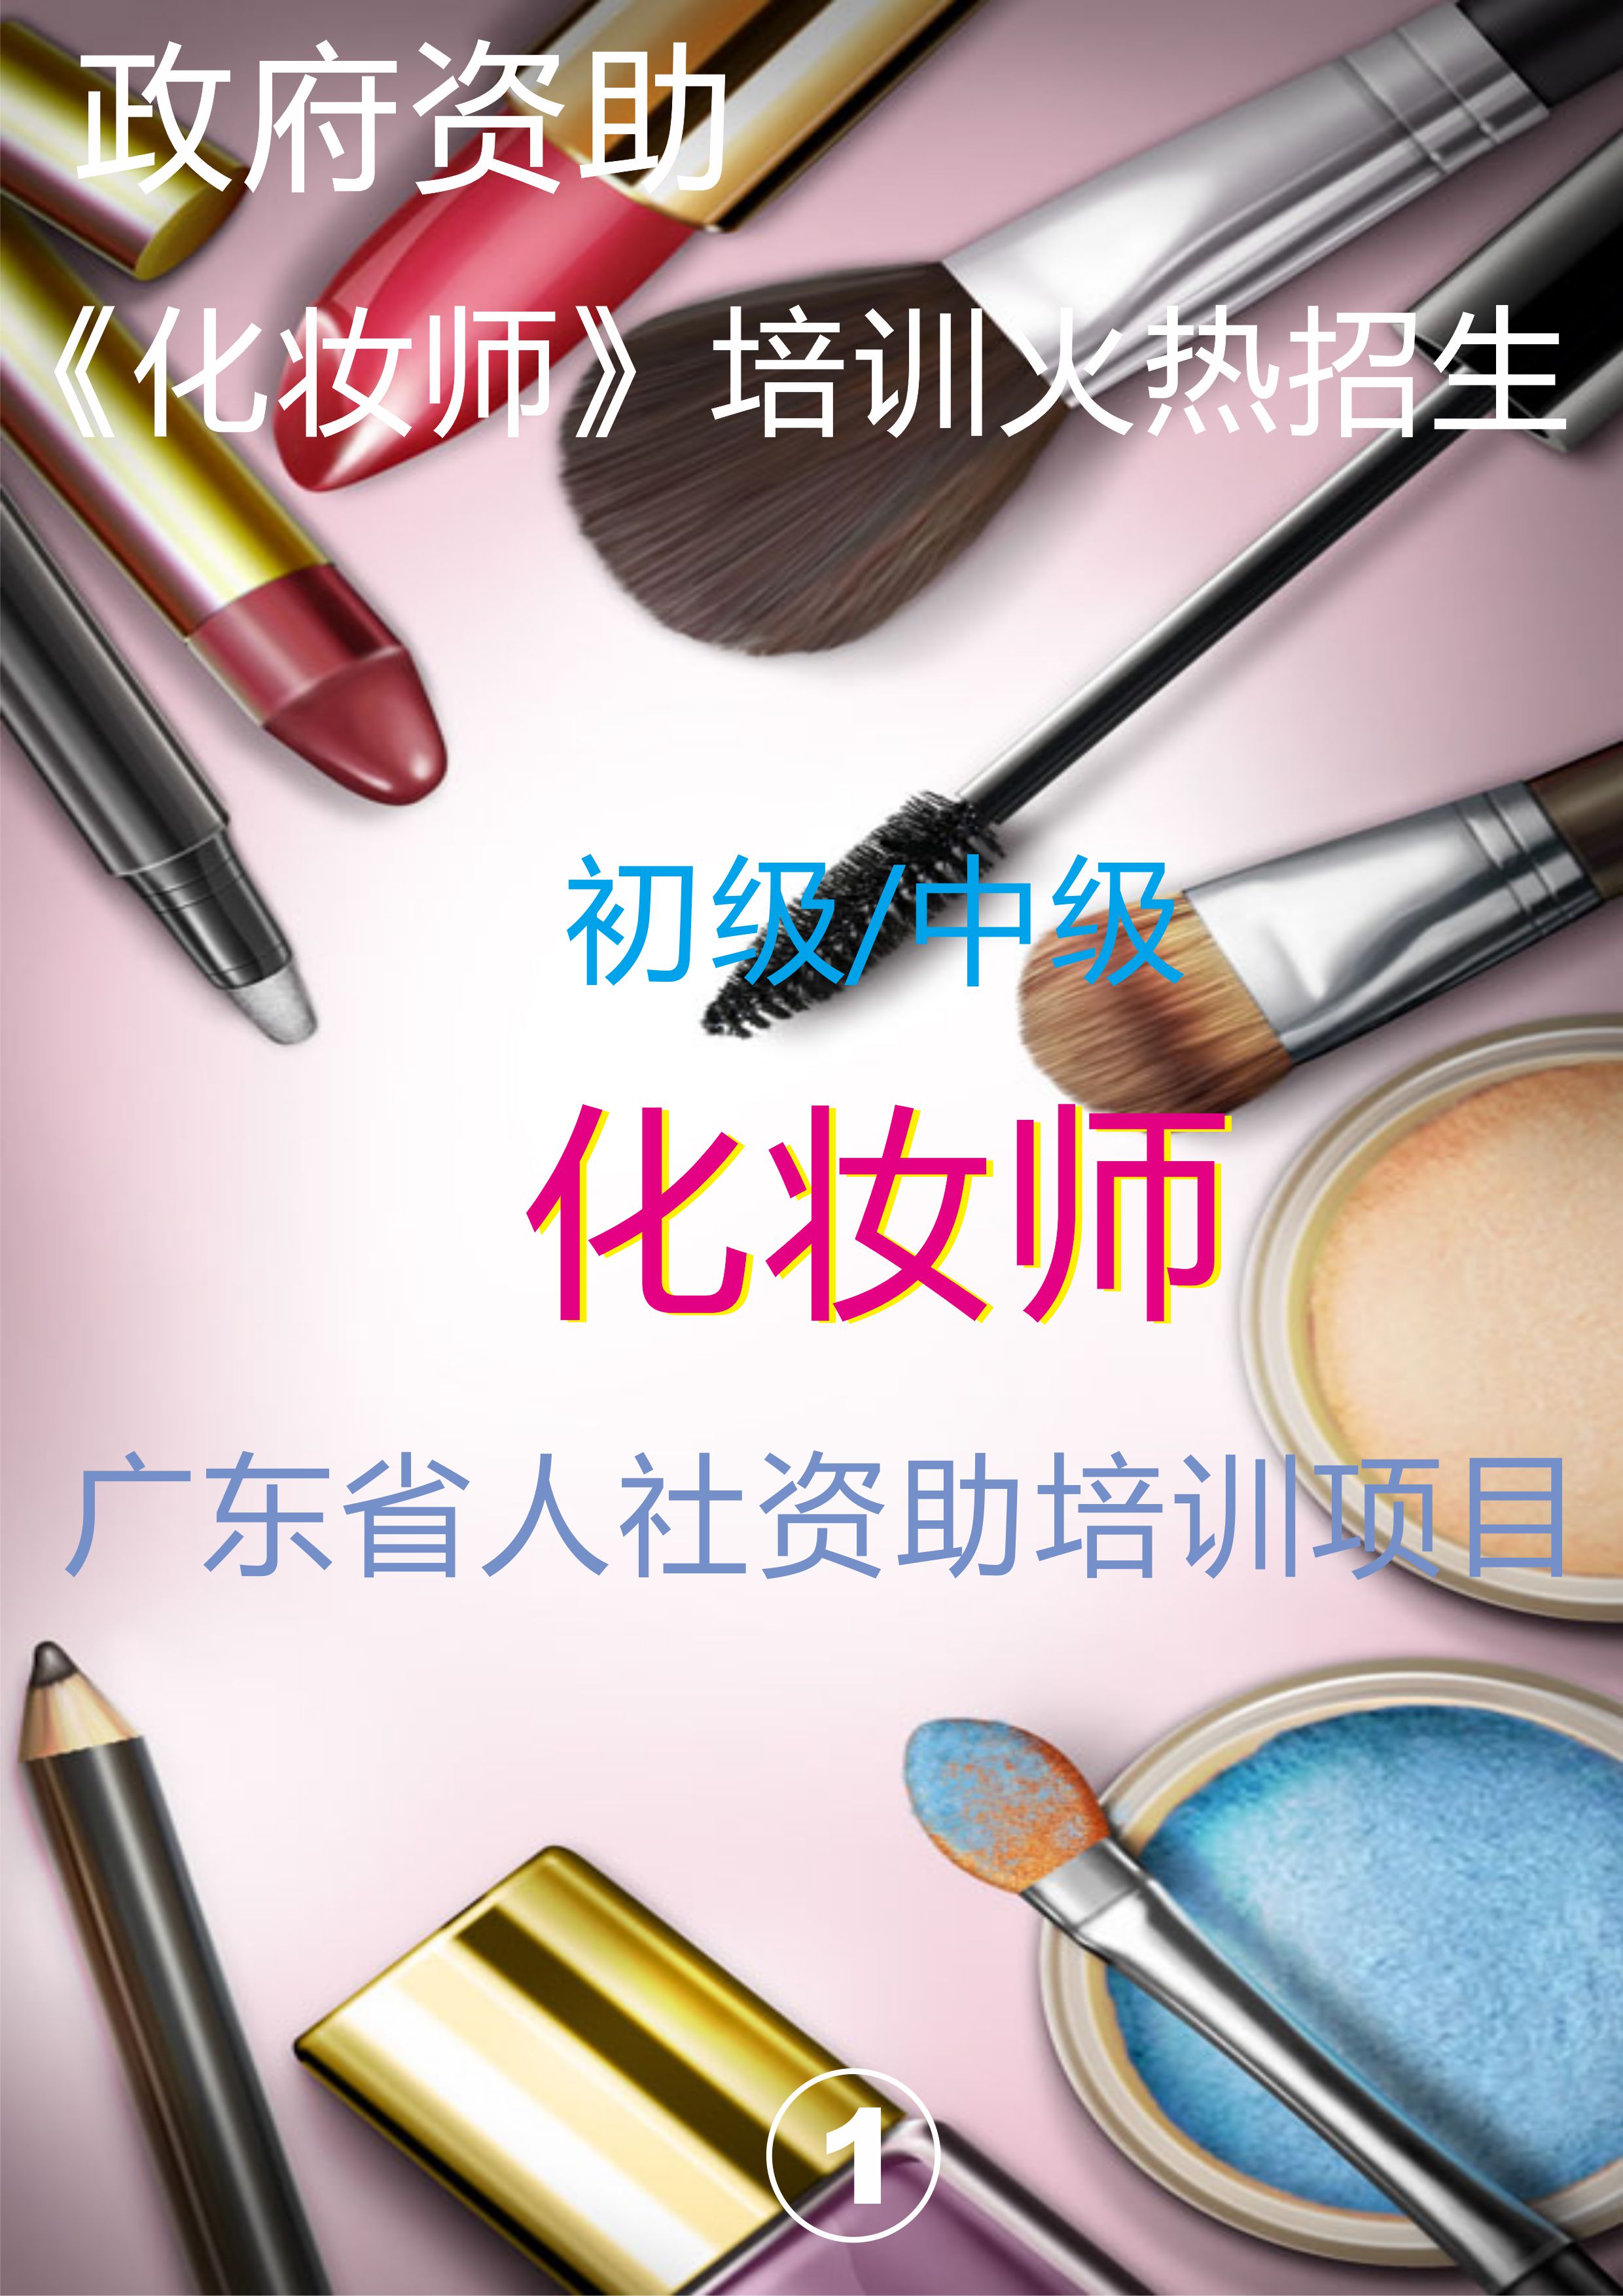 广州化妆师免费培训班 广州哪里有化妆师免费培训班 多少钱